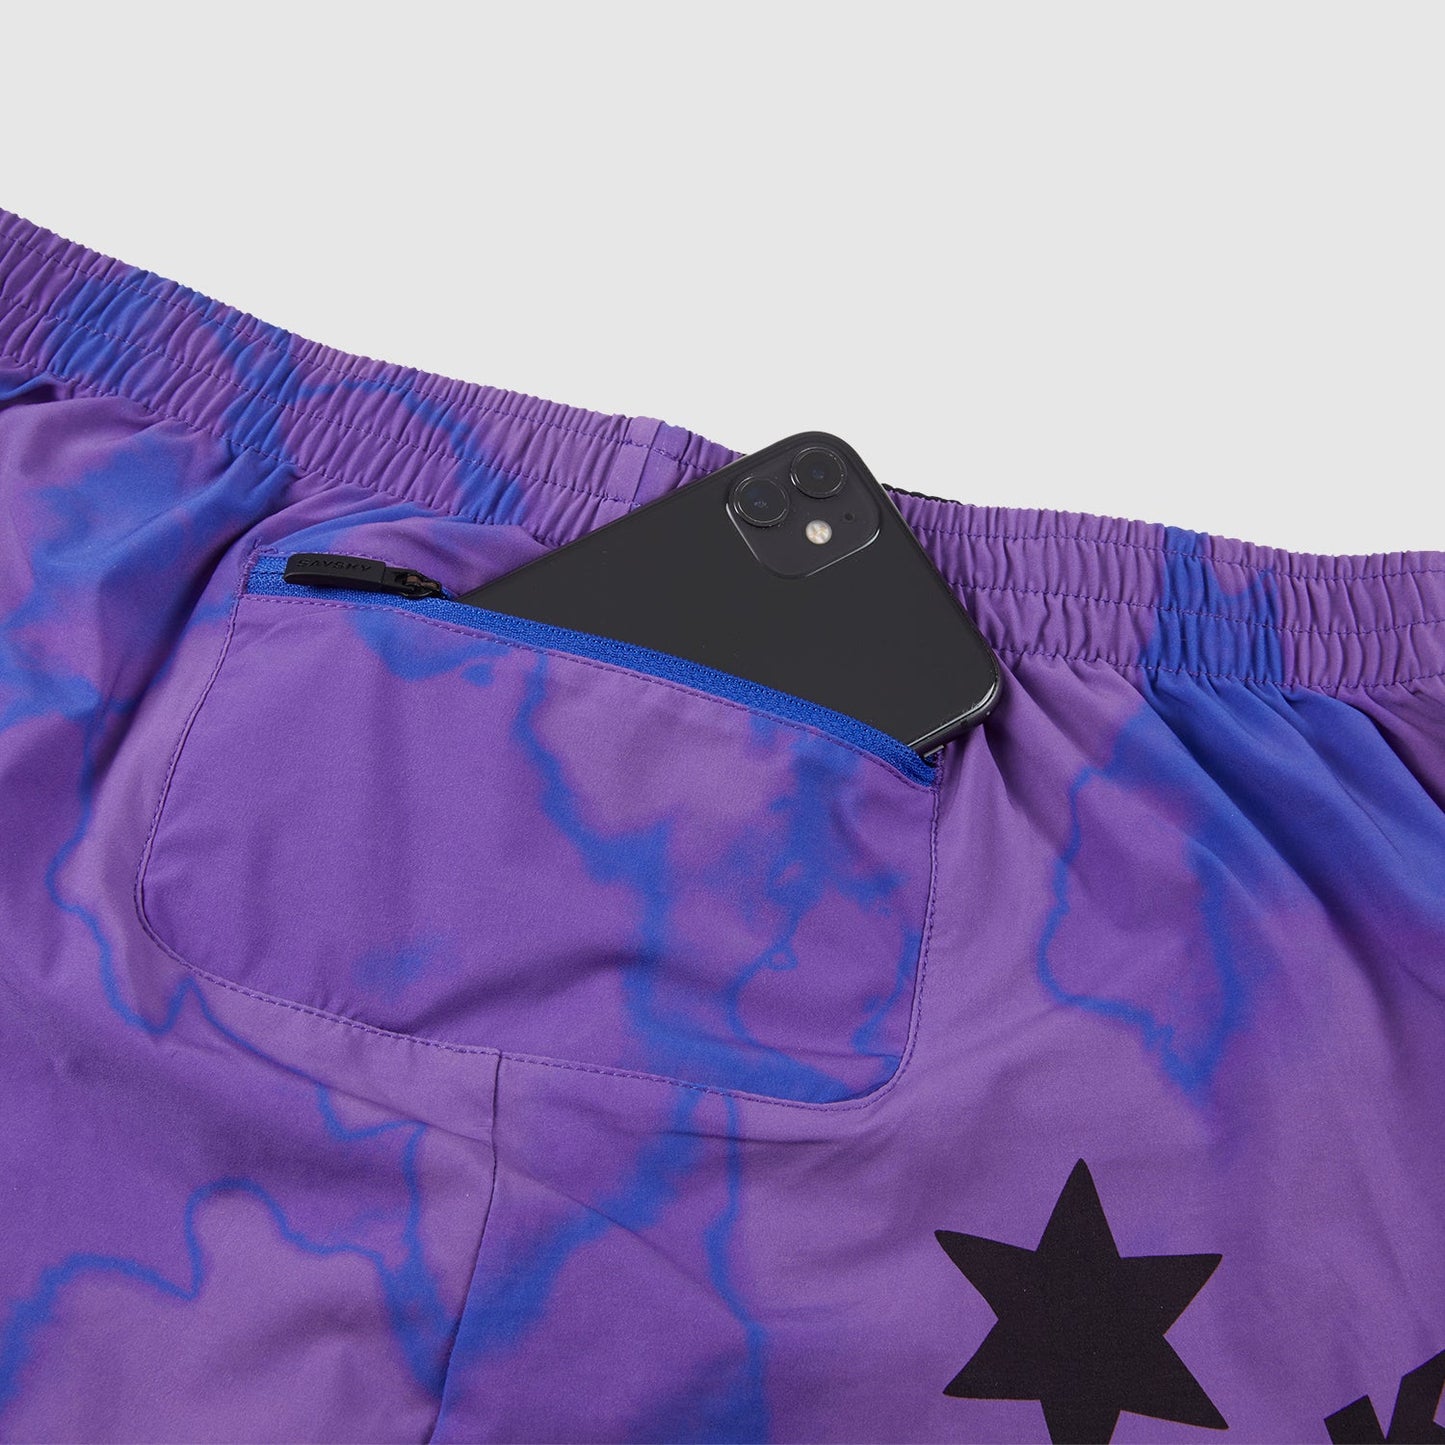 ランニングショーツ HMRSH09 Pace Long Shorts - Purple Toxicity [ユニセックス]